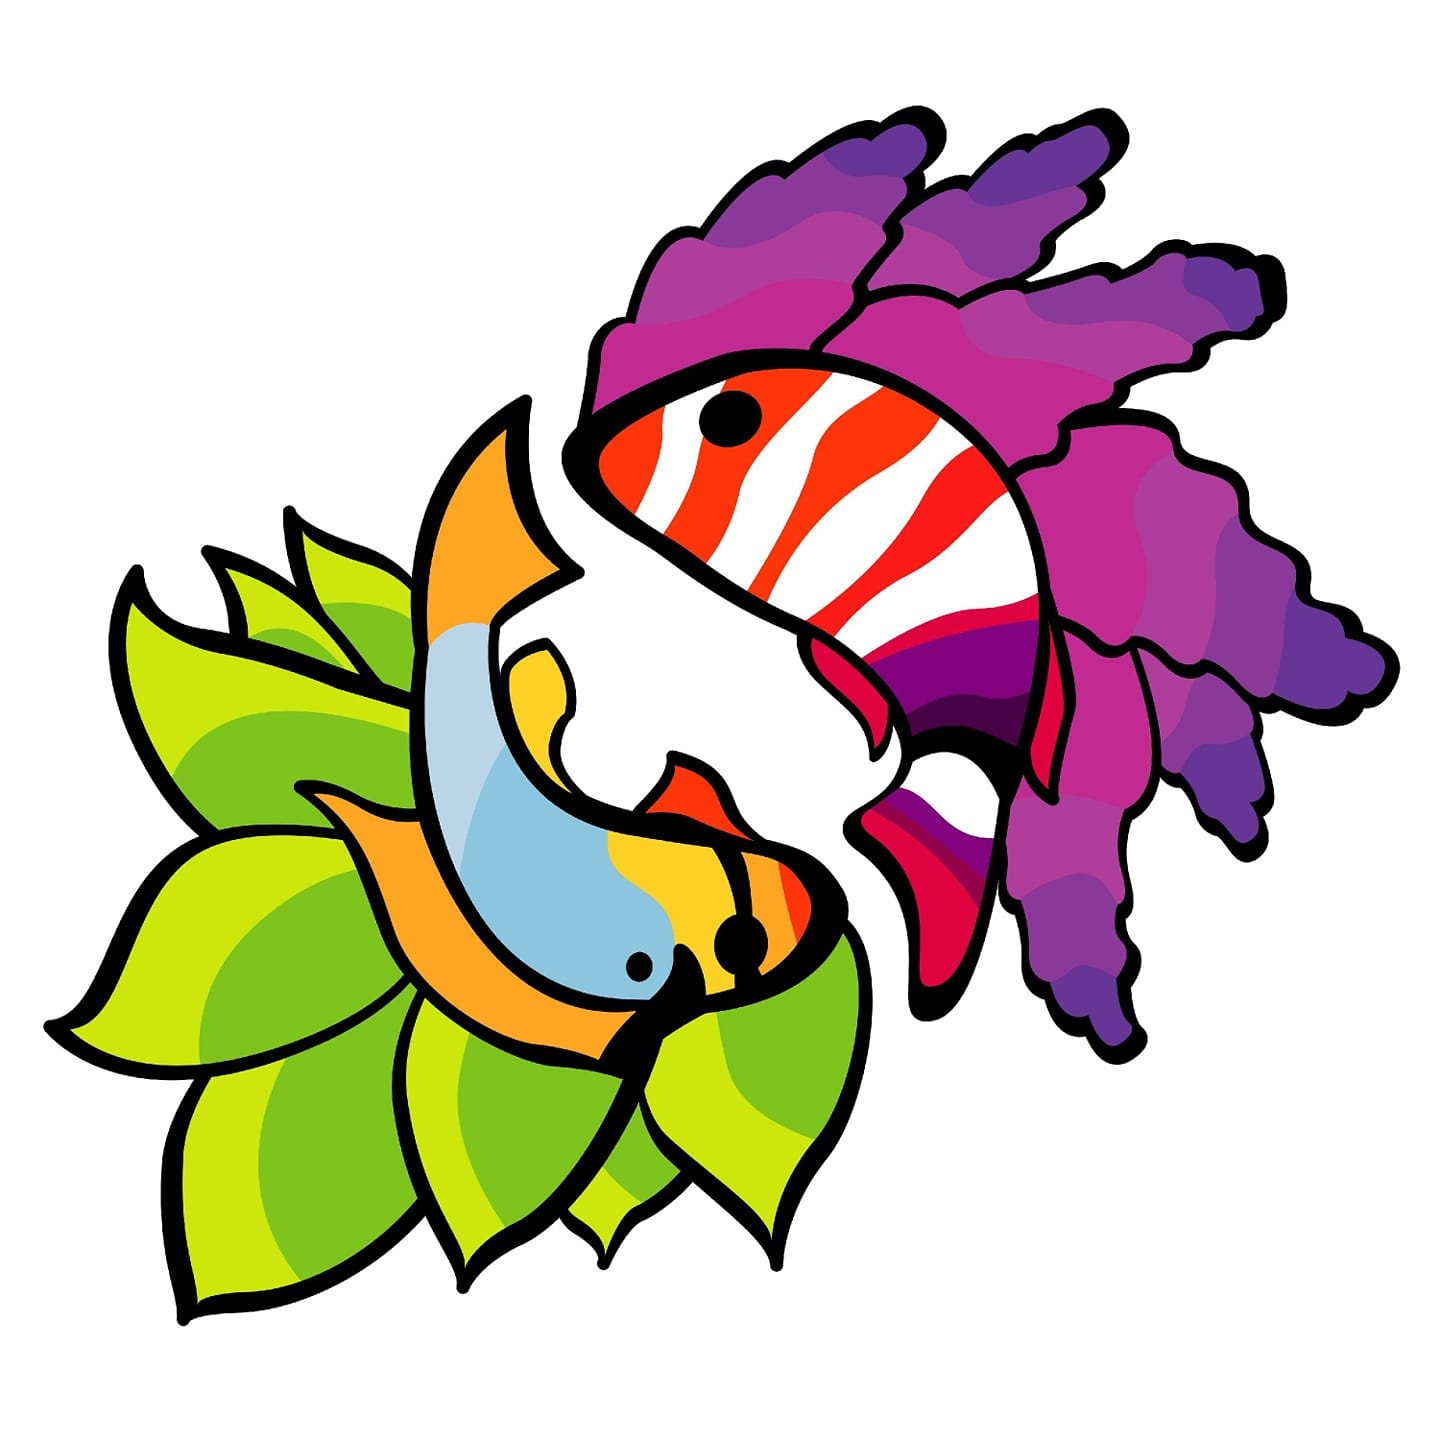 Company logo of Fish Mania